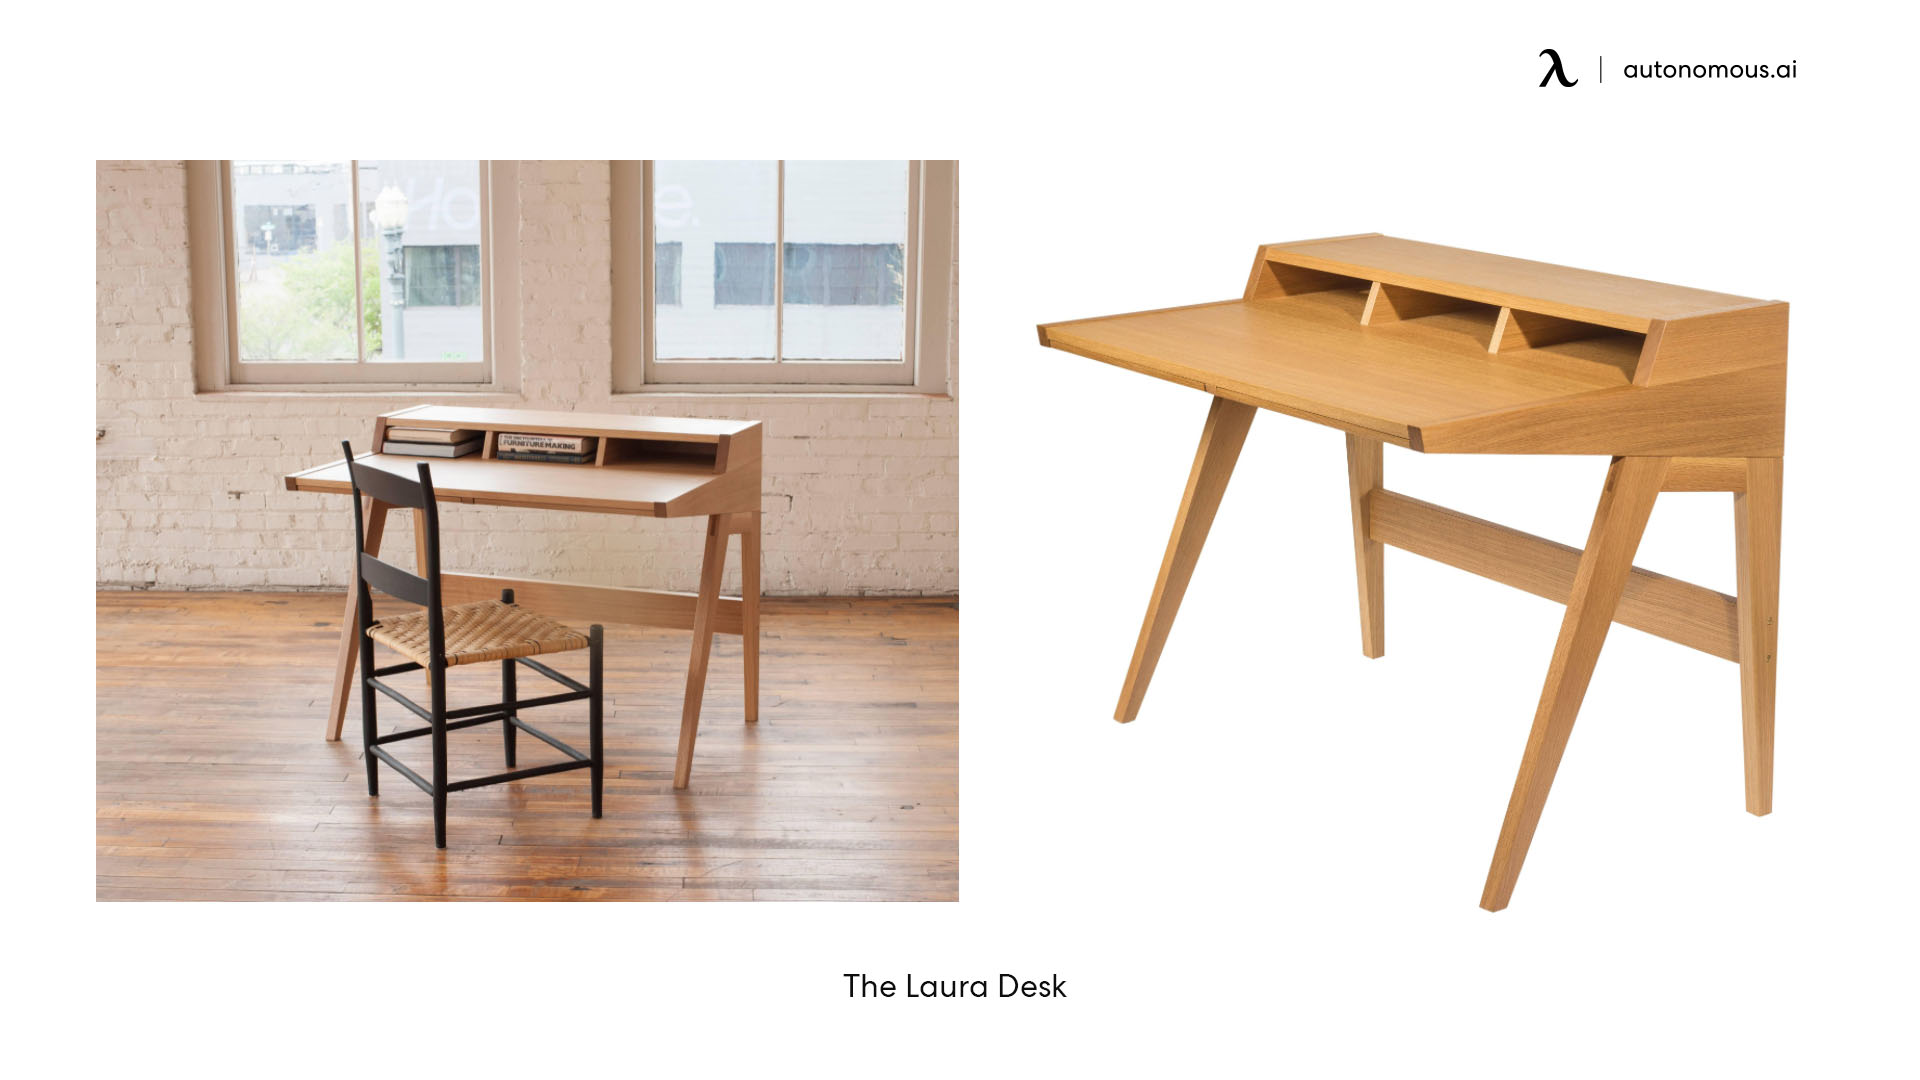 The Laura Desk